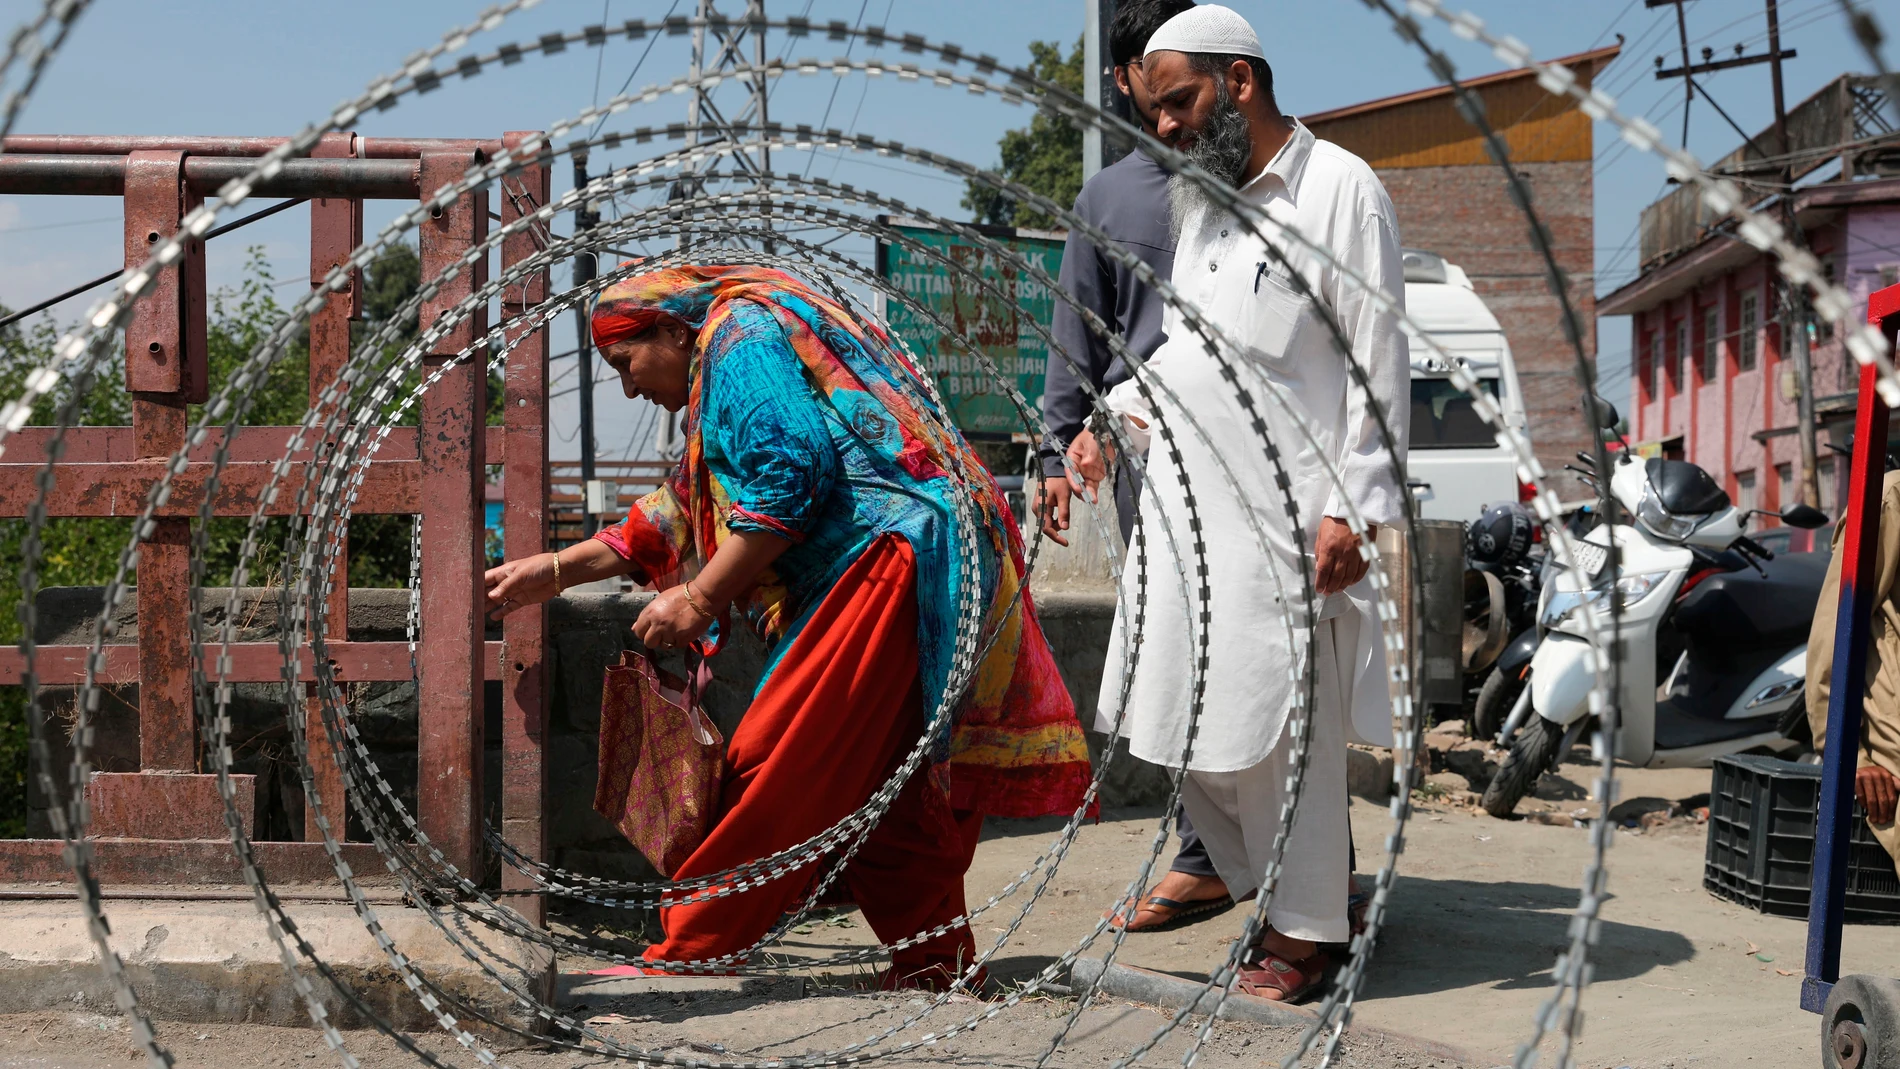 Las autoridades han impuesto restricciones en Cachemira tras la muerte del líder independentista Geelani